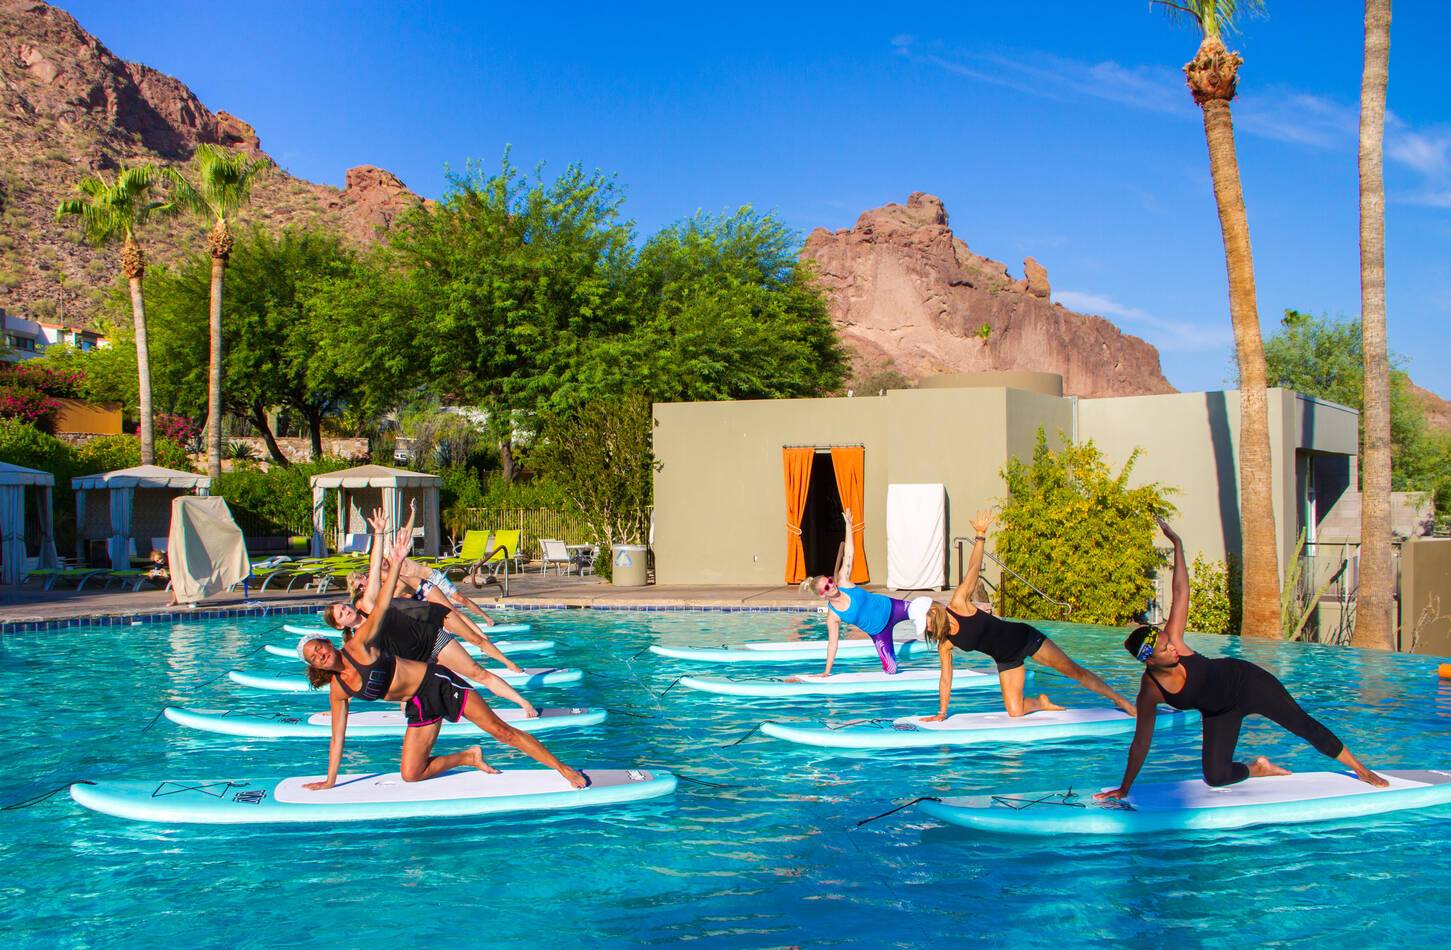 CamelBack Mountain Arizona Paddleboard Yoga